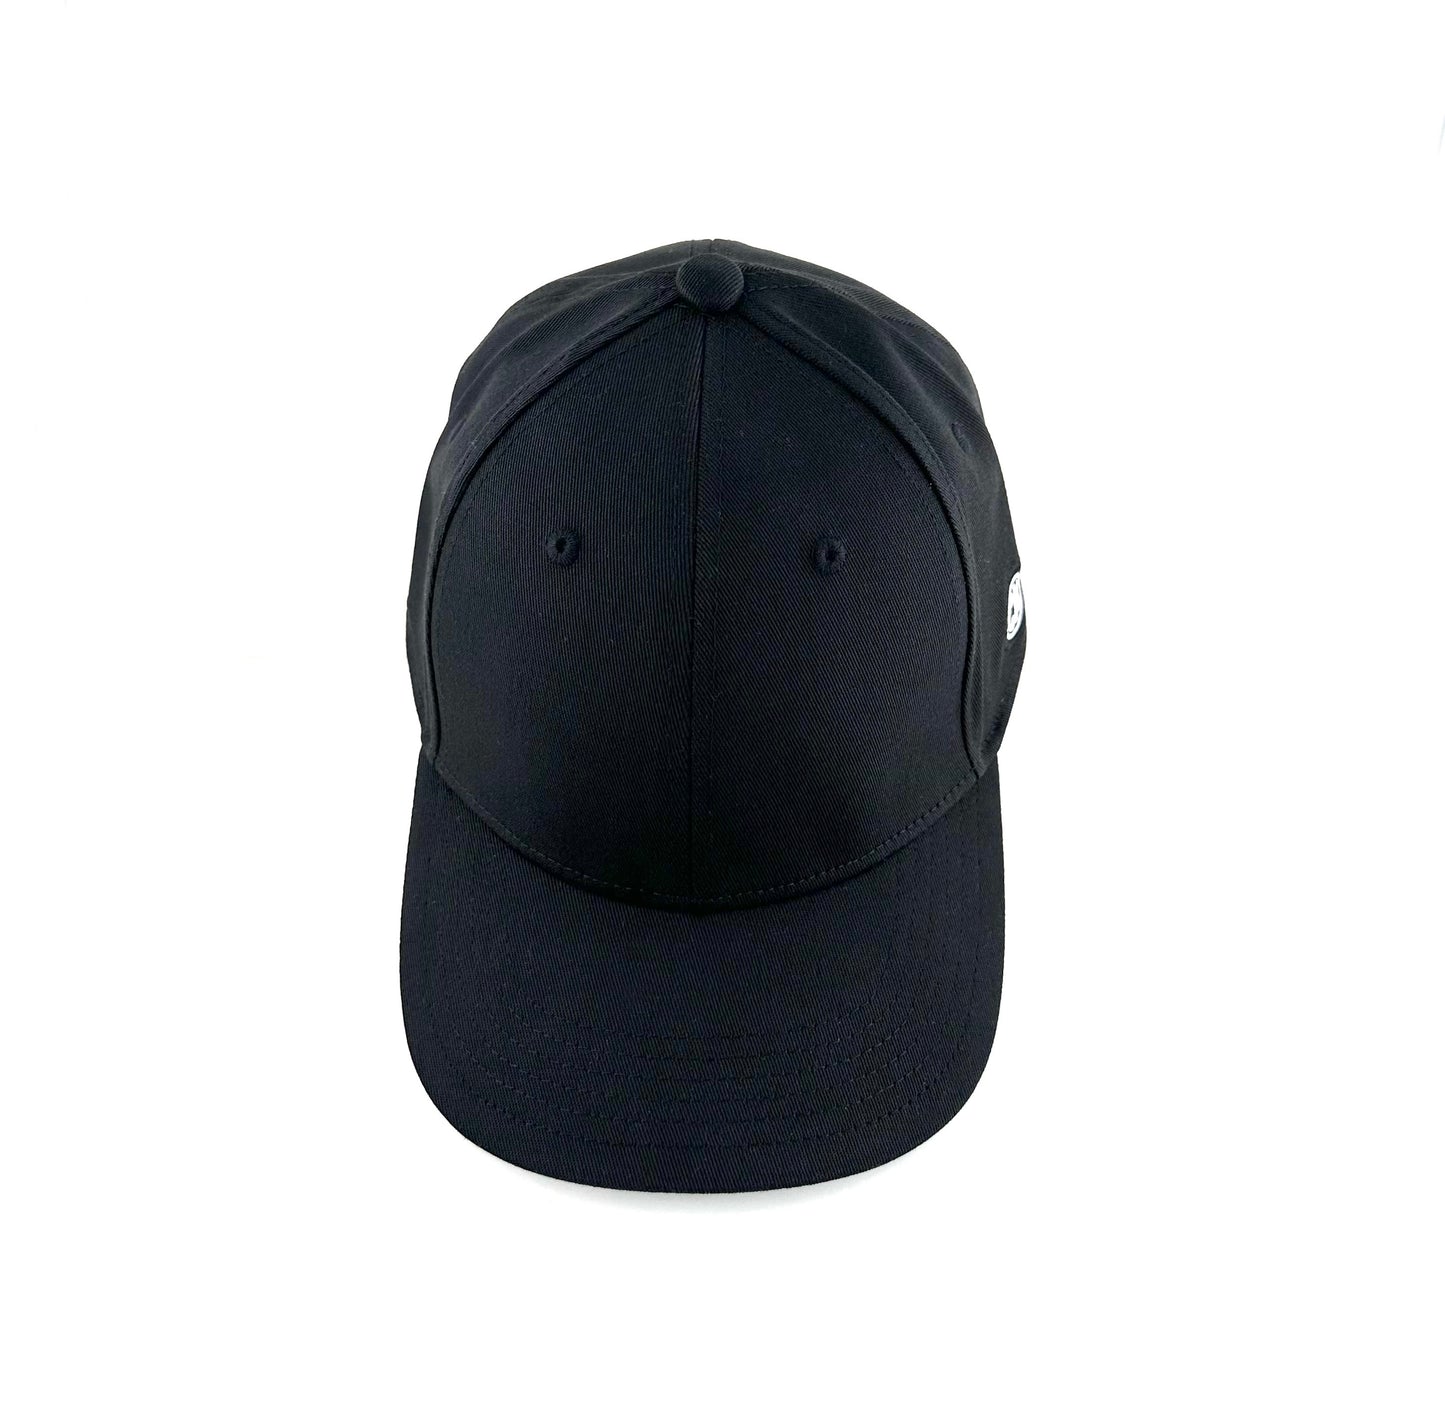 CNQ KING Essentials SnapBack Cap - Black